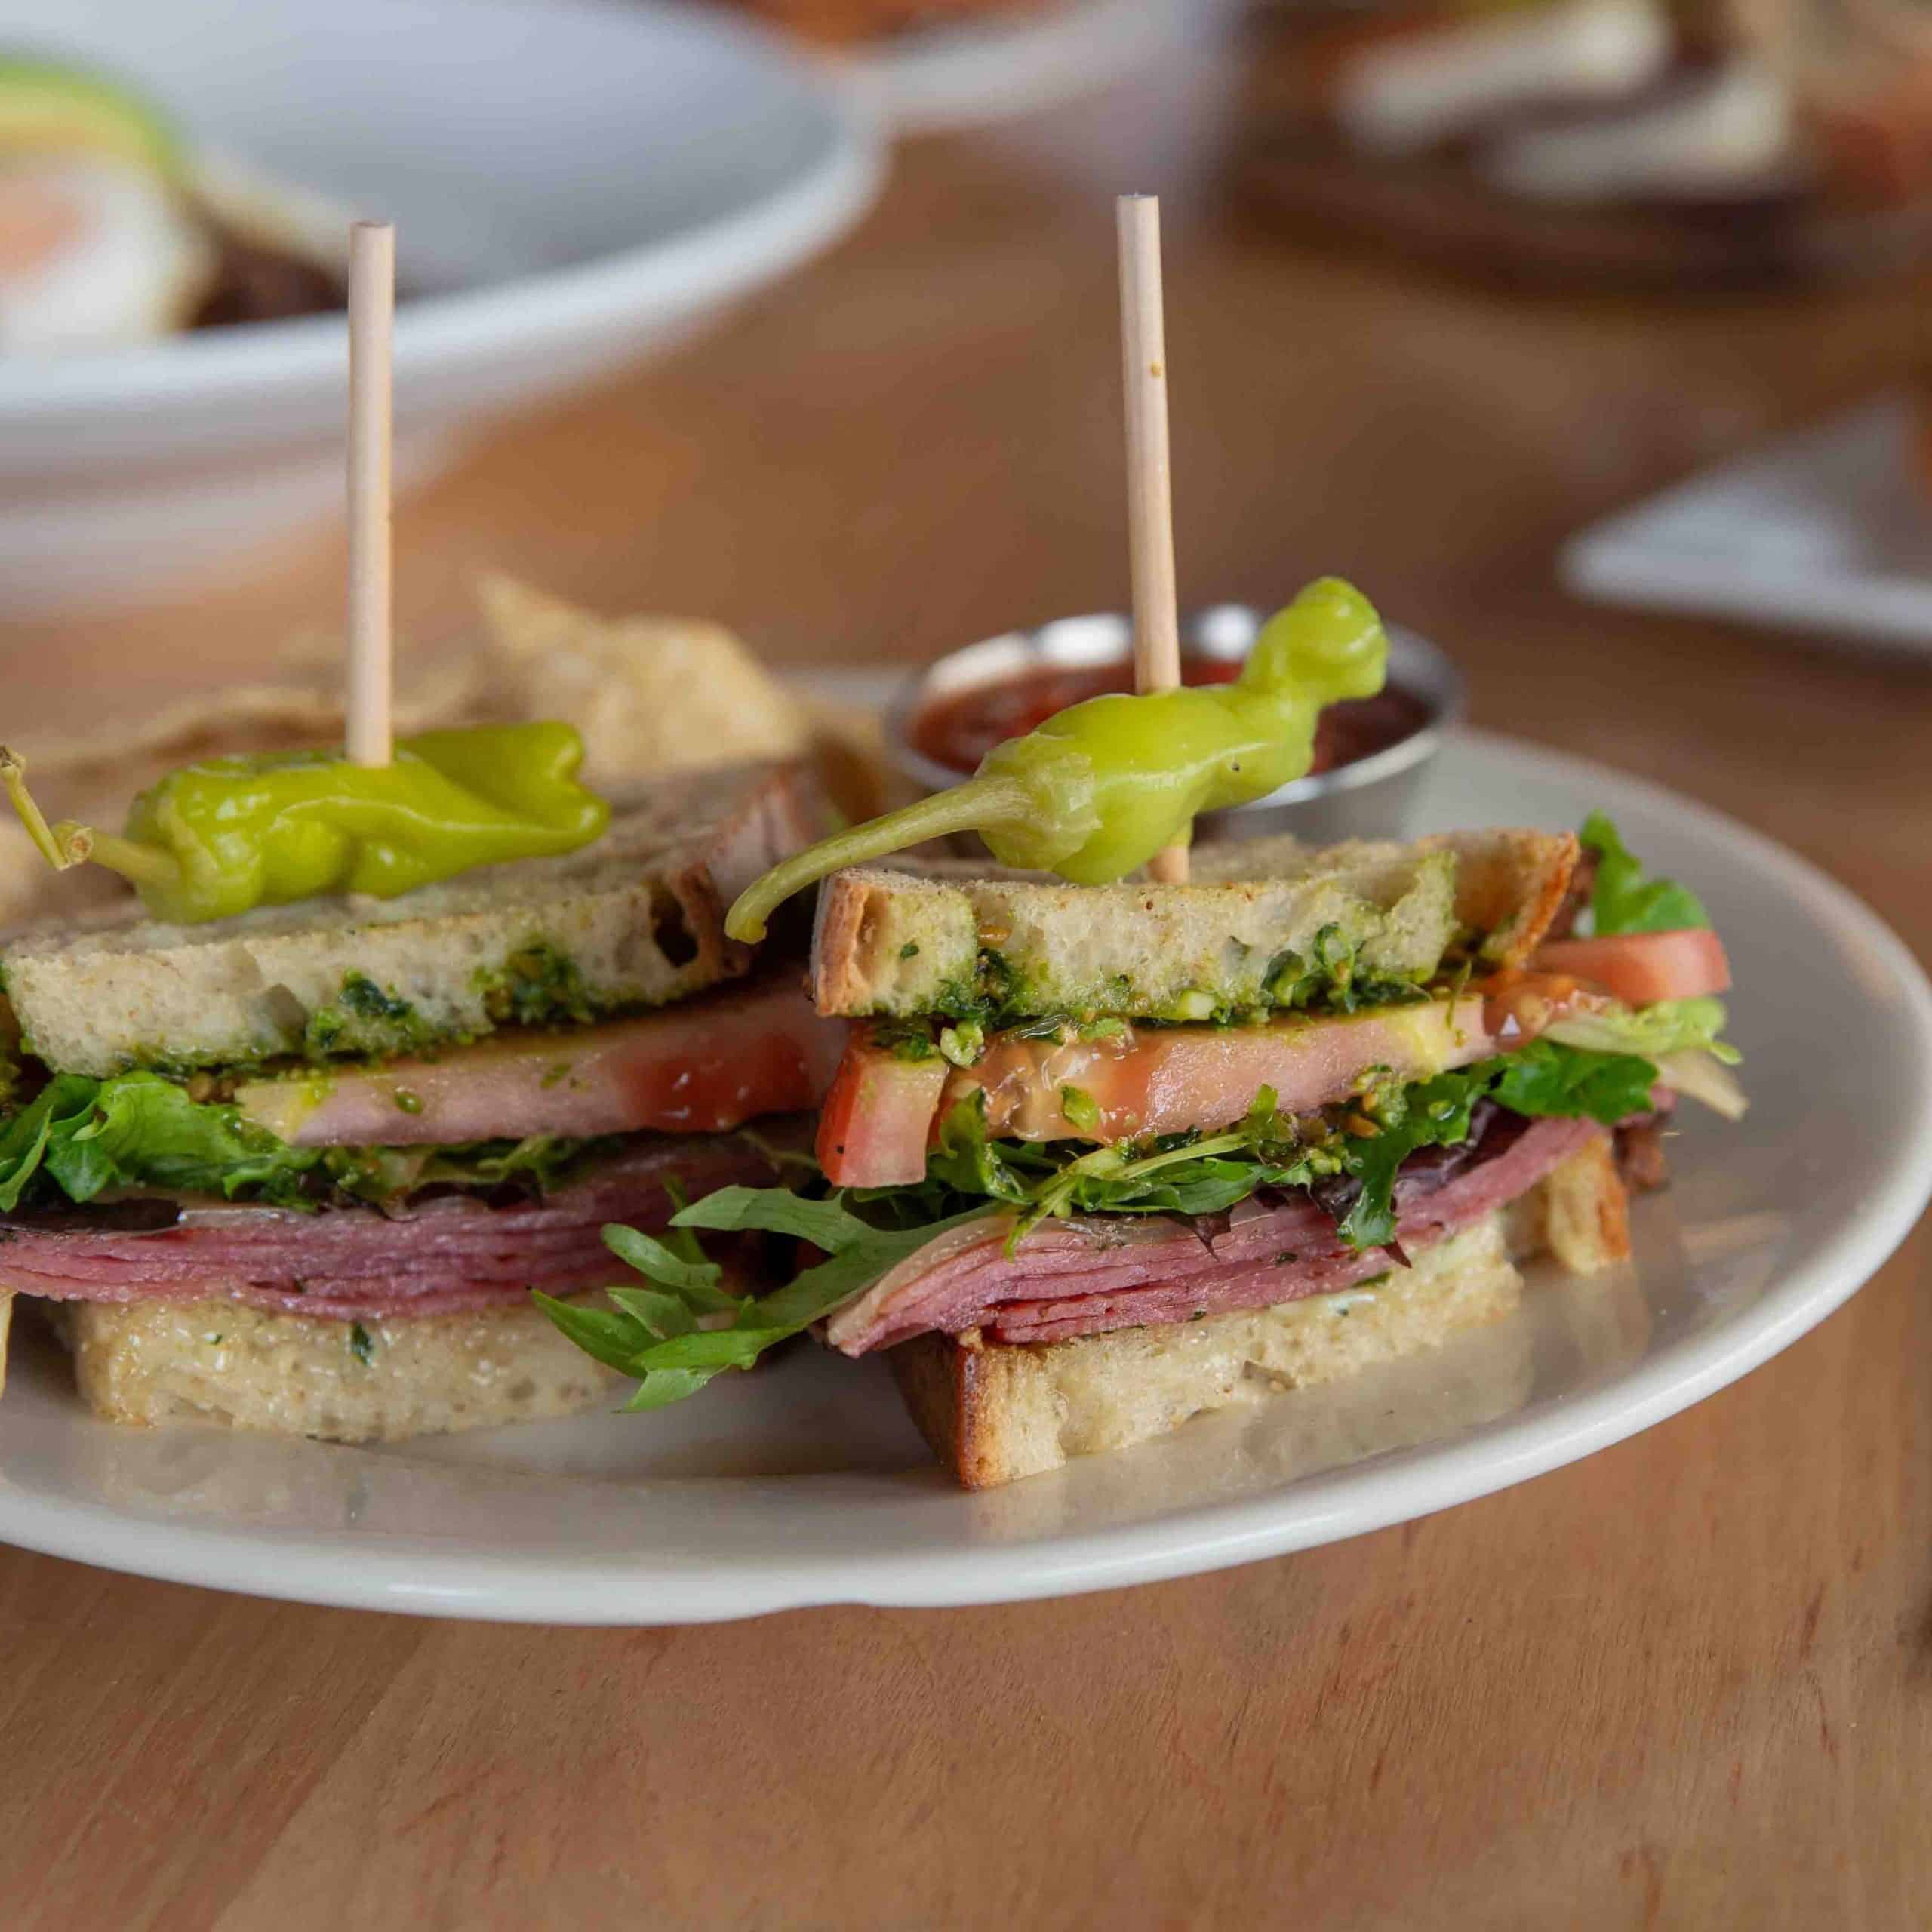 new menu item - salami sandwich on a plate